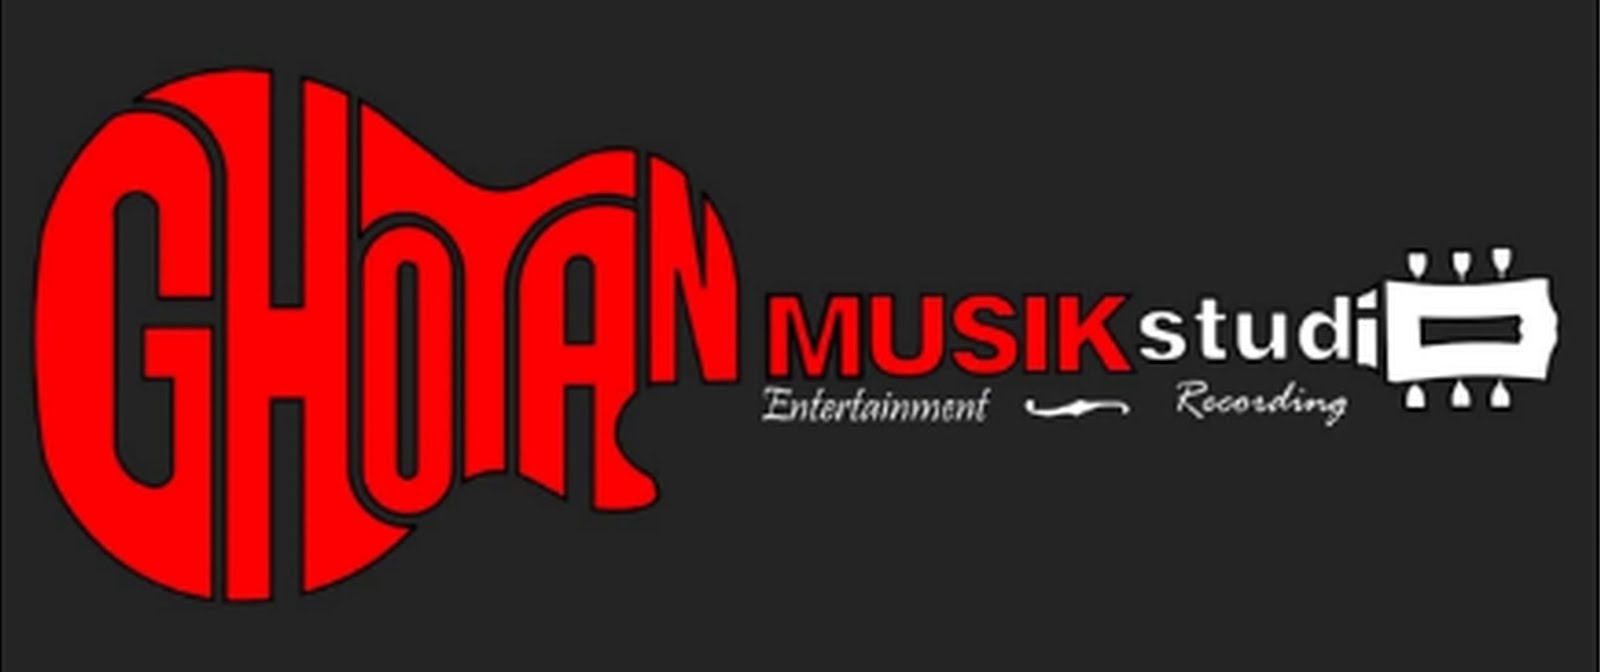 Ghoyan Musik Studio